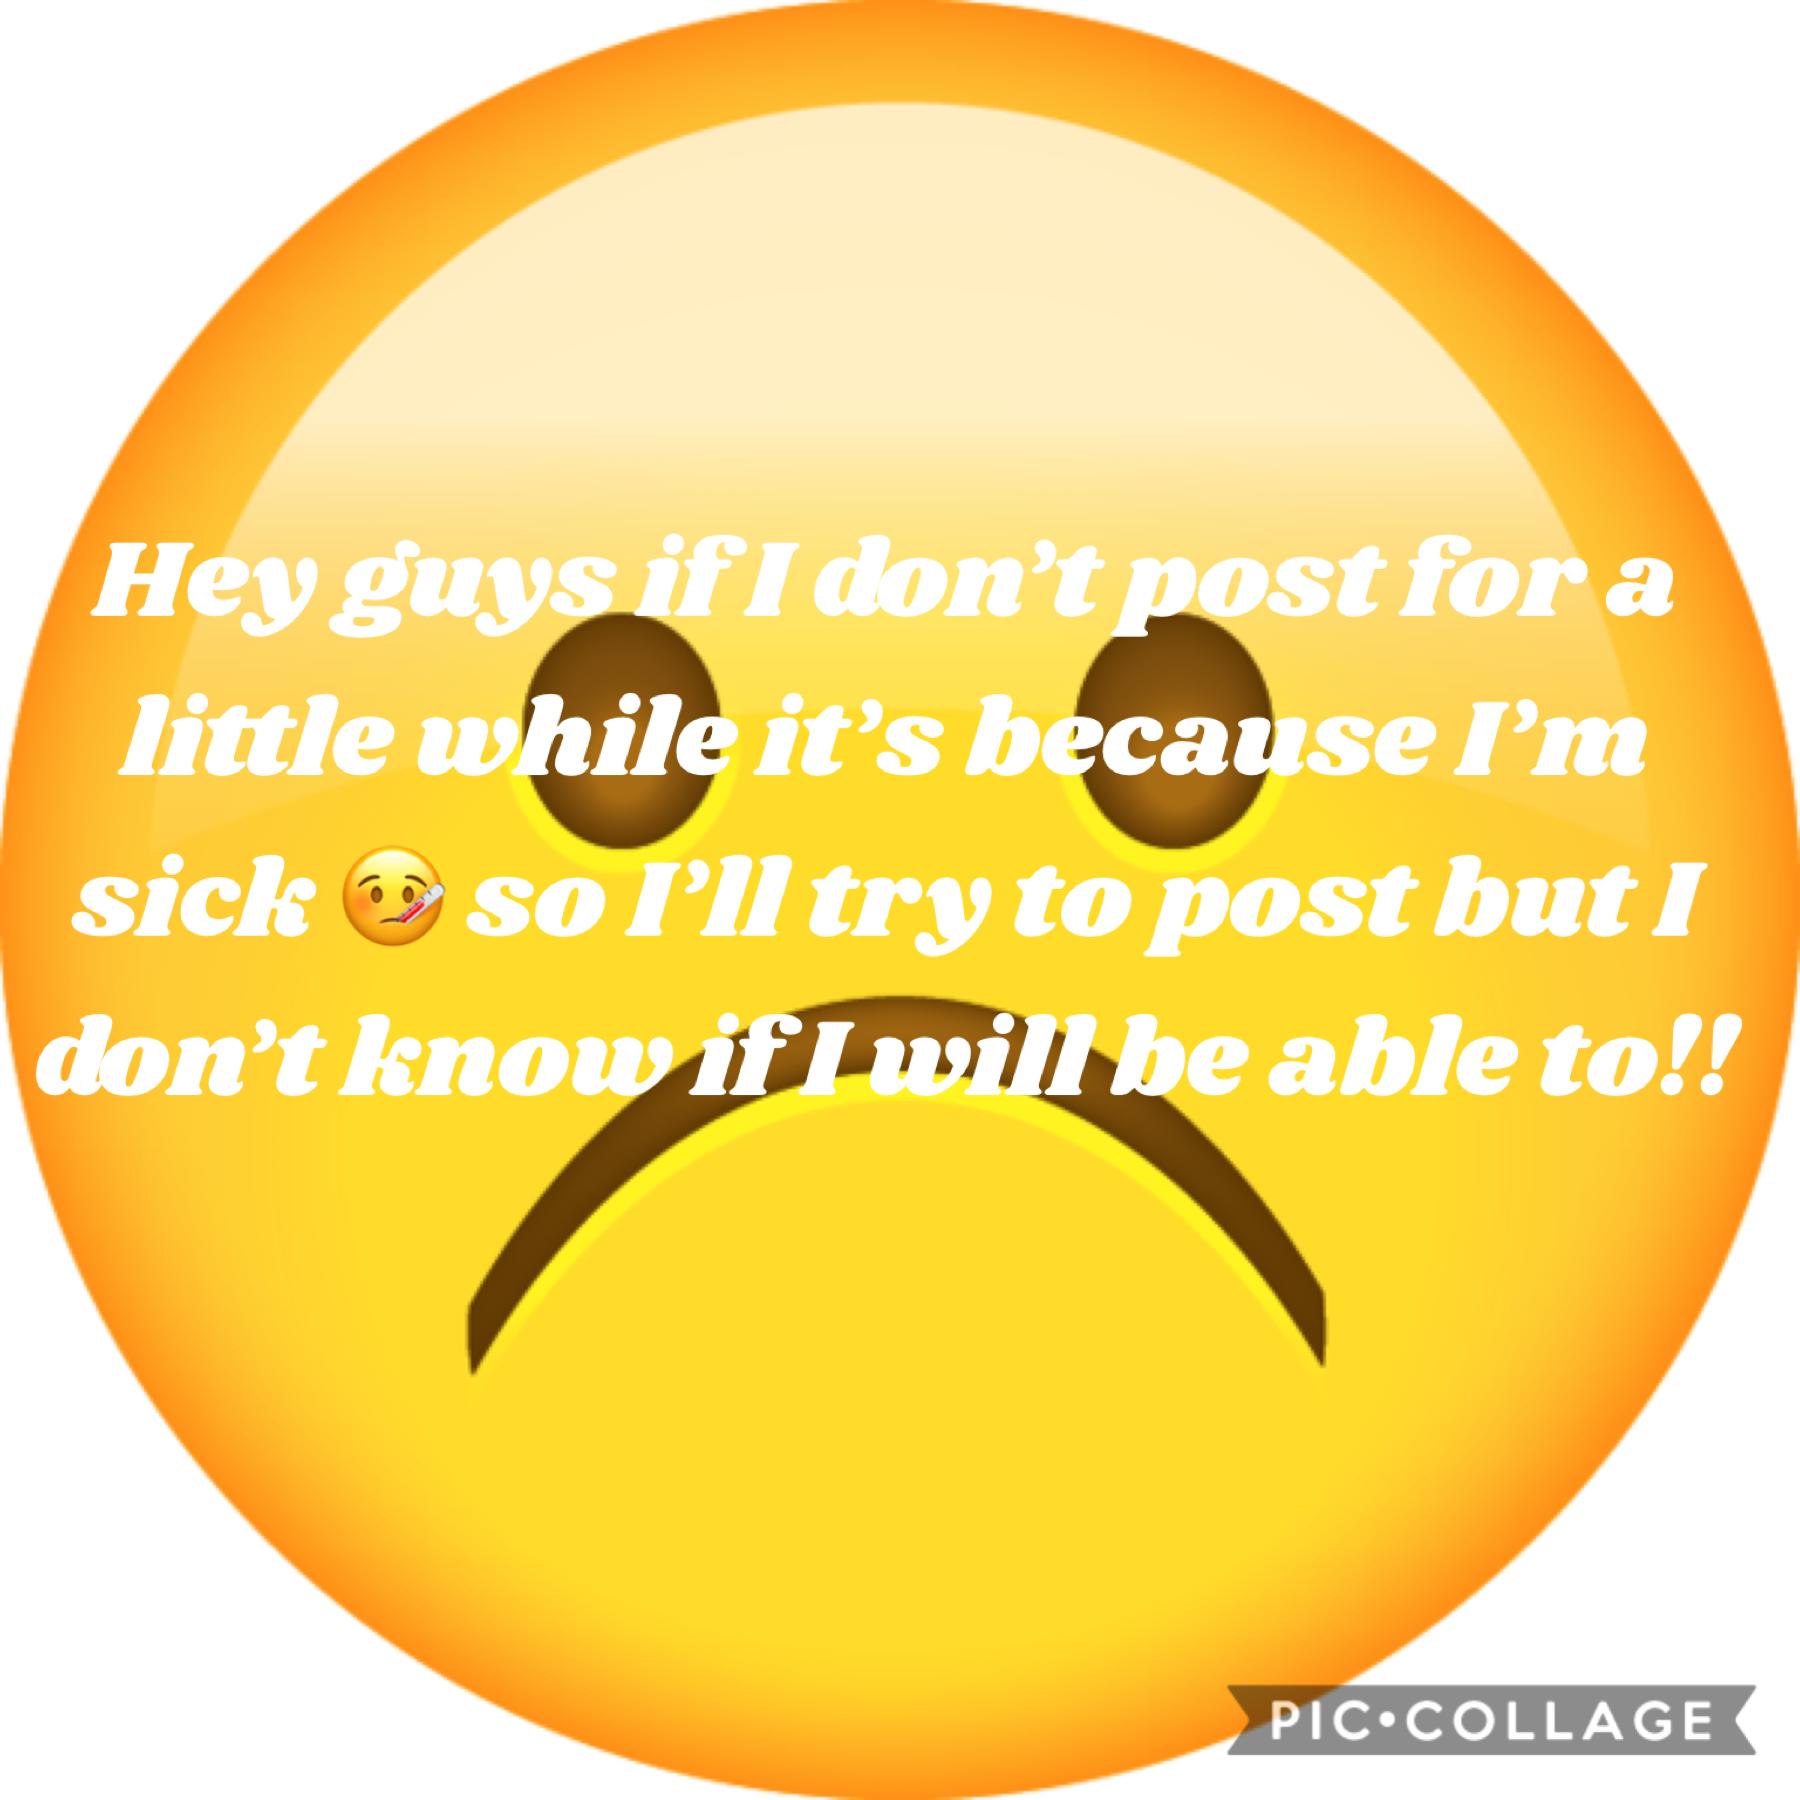 I’m sick 😞 